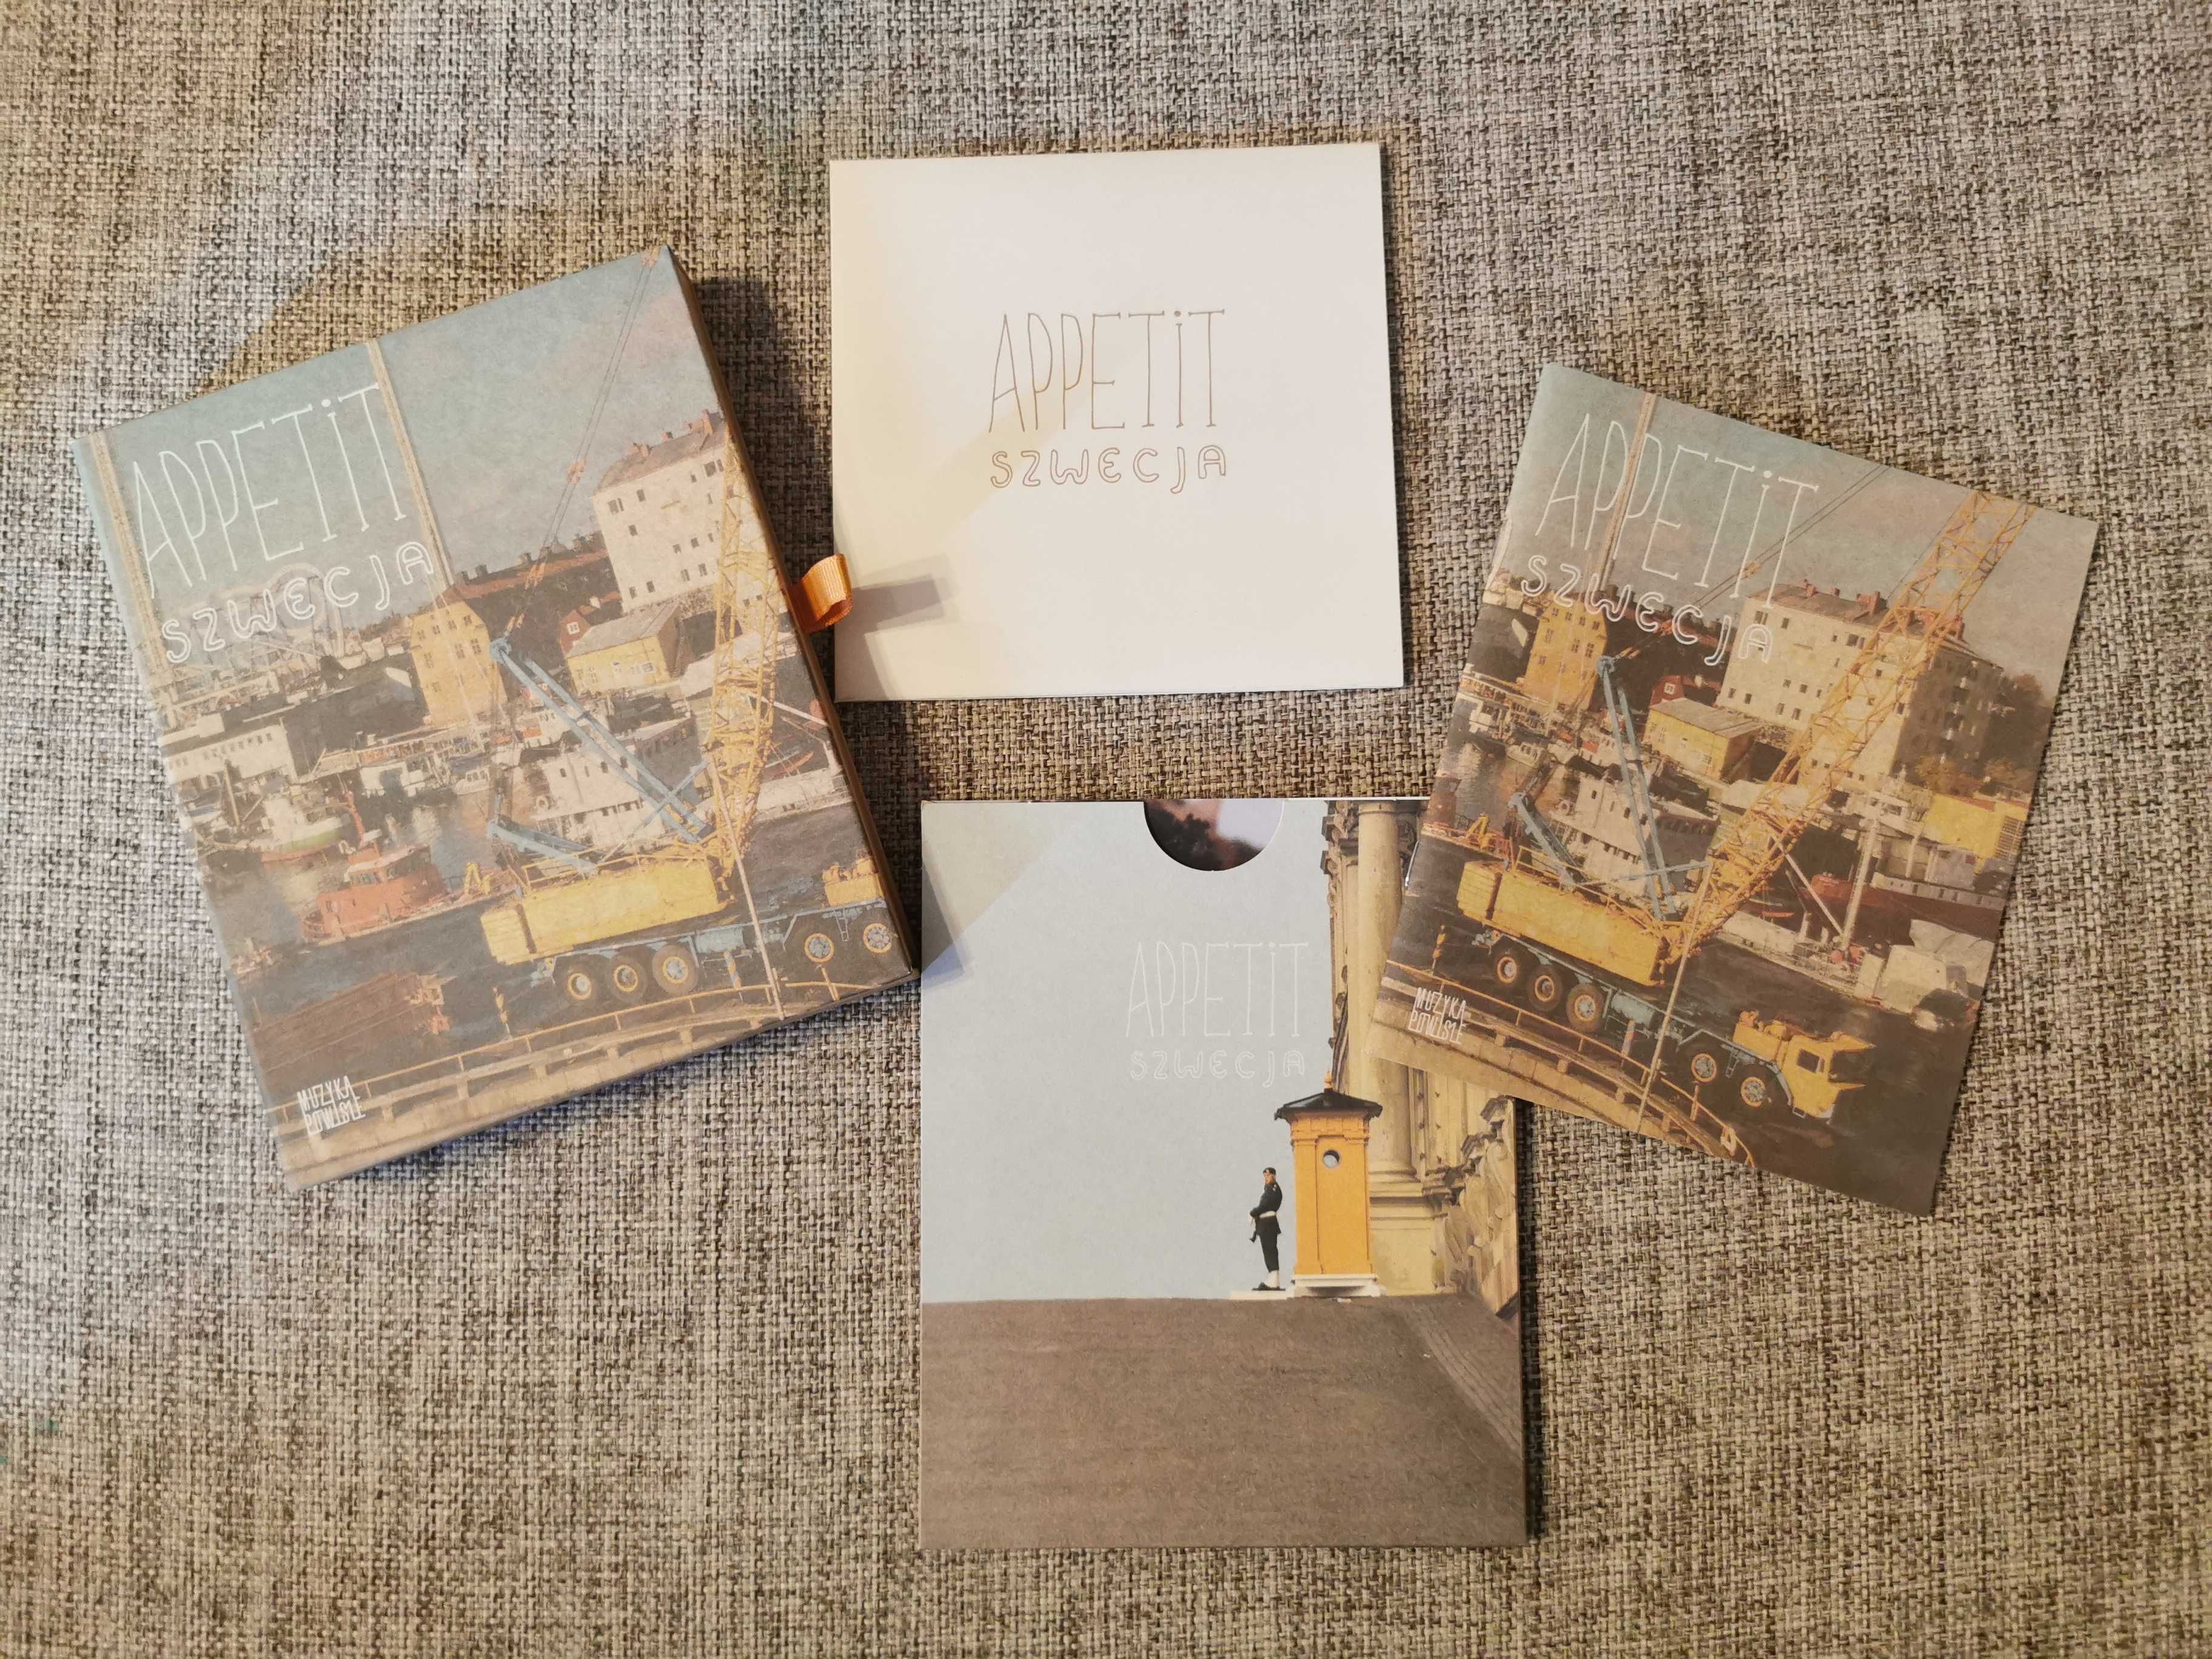 Appetit Szwecja - Płyta CD + Fiszki